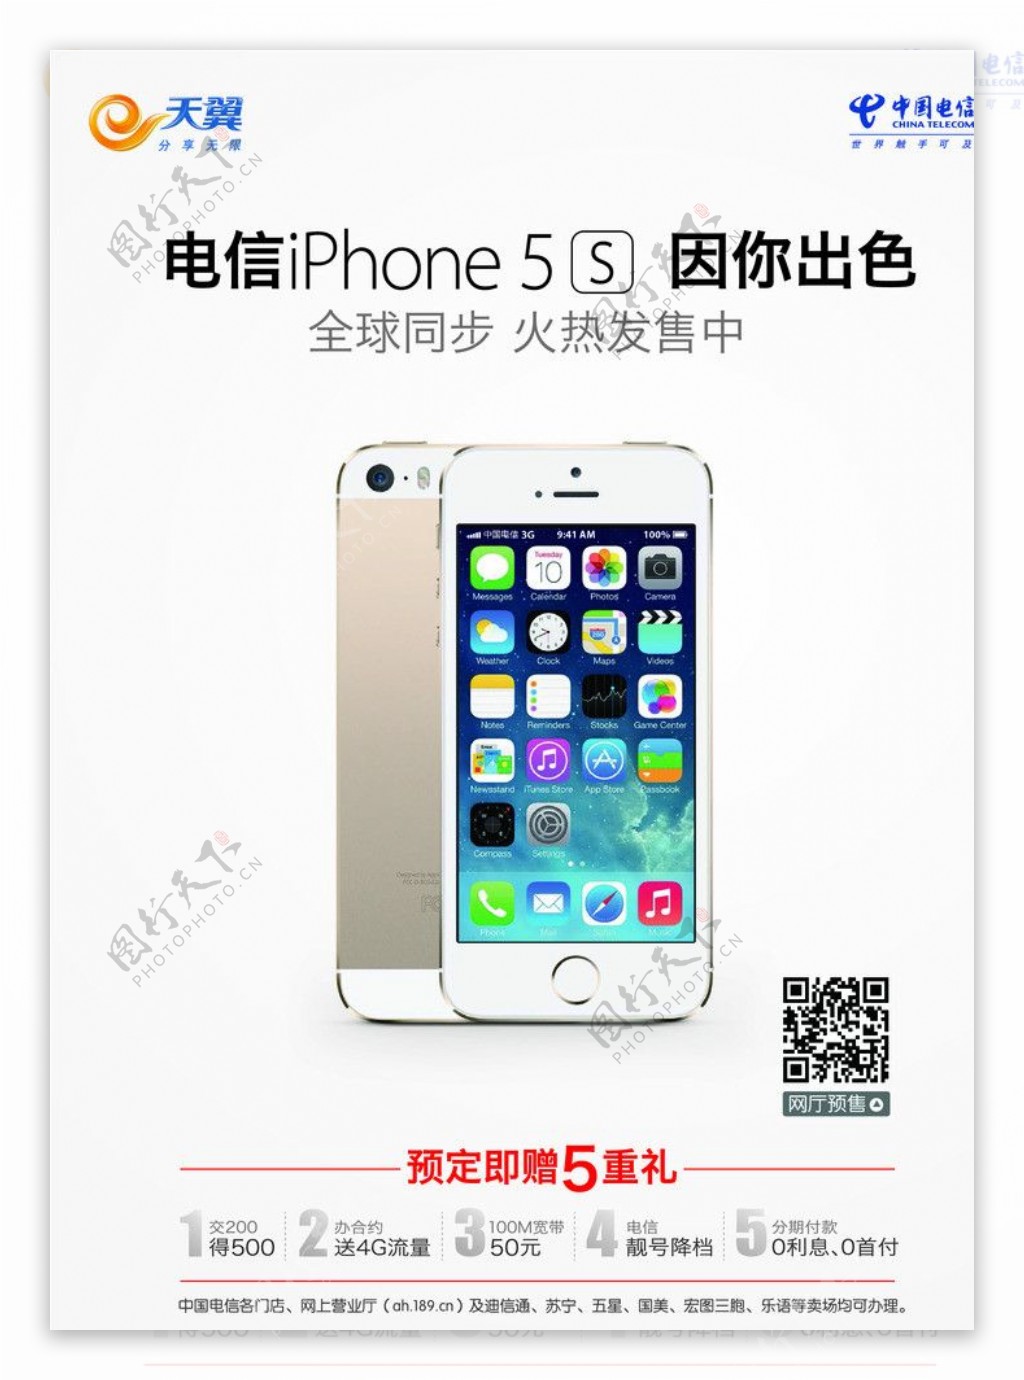 iPHONE5s宣传图片